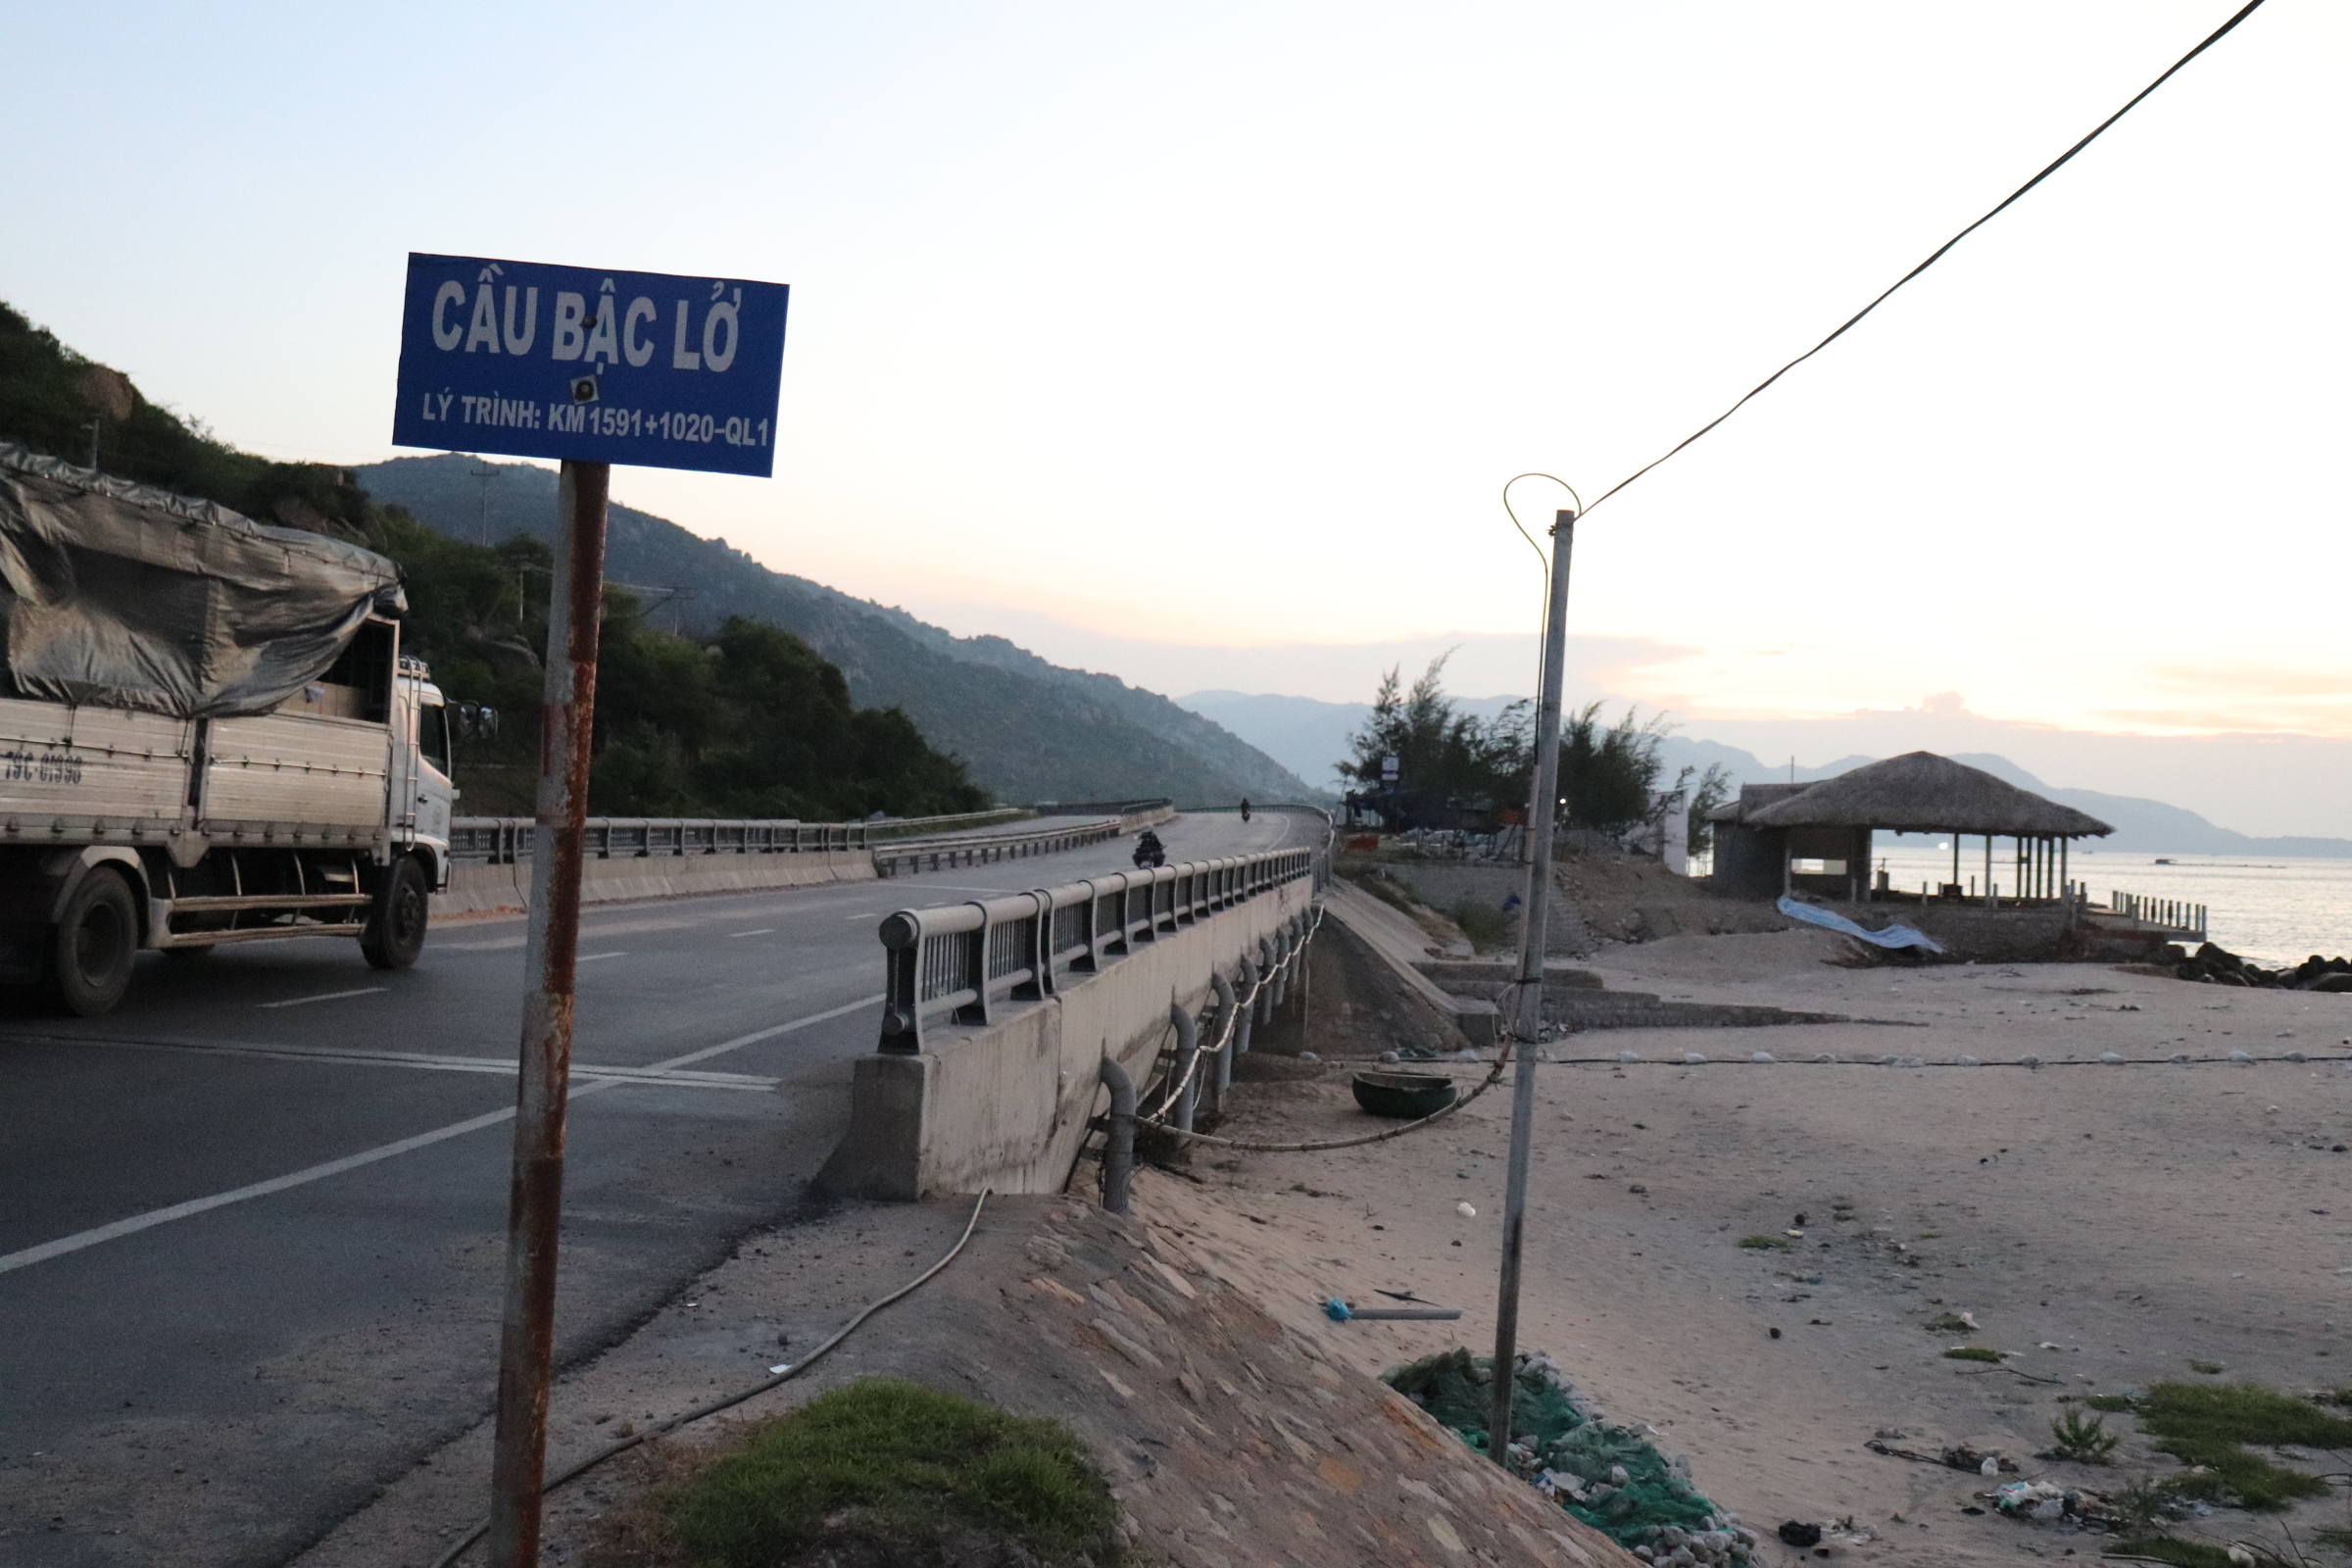 Nhà hàng Vĩnh Hảo 2 khi mới xây dựng tháng 7.2018, đây là đoạn đường cong cua giáp với Cà Ná - Ninh Thuận rất nhiều tai nạn giao thông đã xảy ra